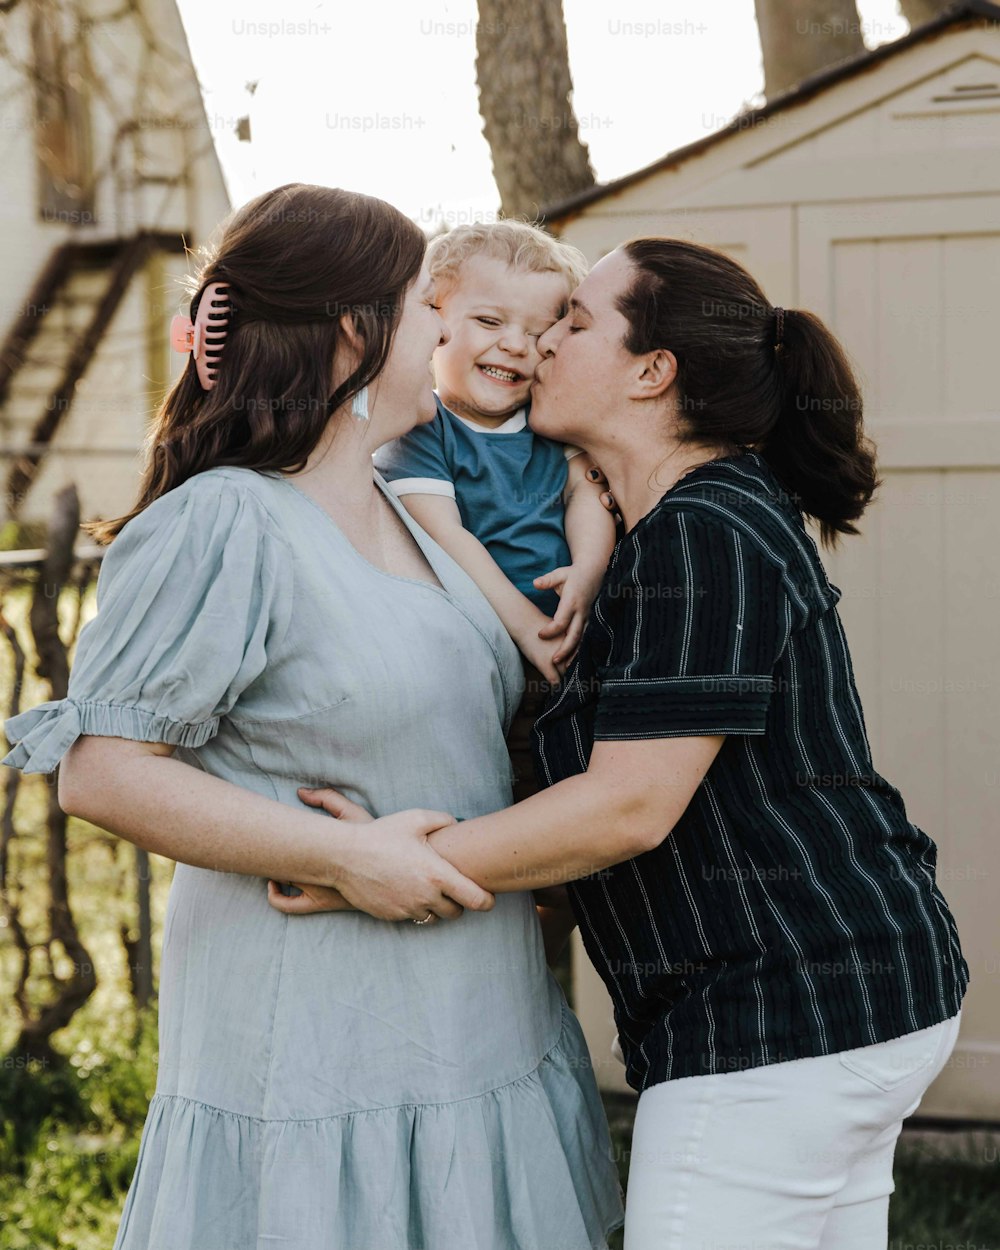 una mujer sosteniendo a un bebé y besando a otra mujer